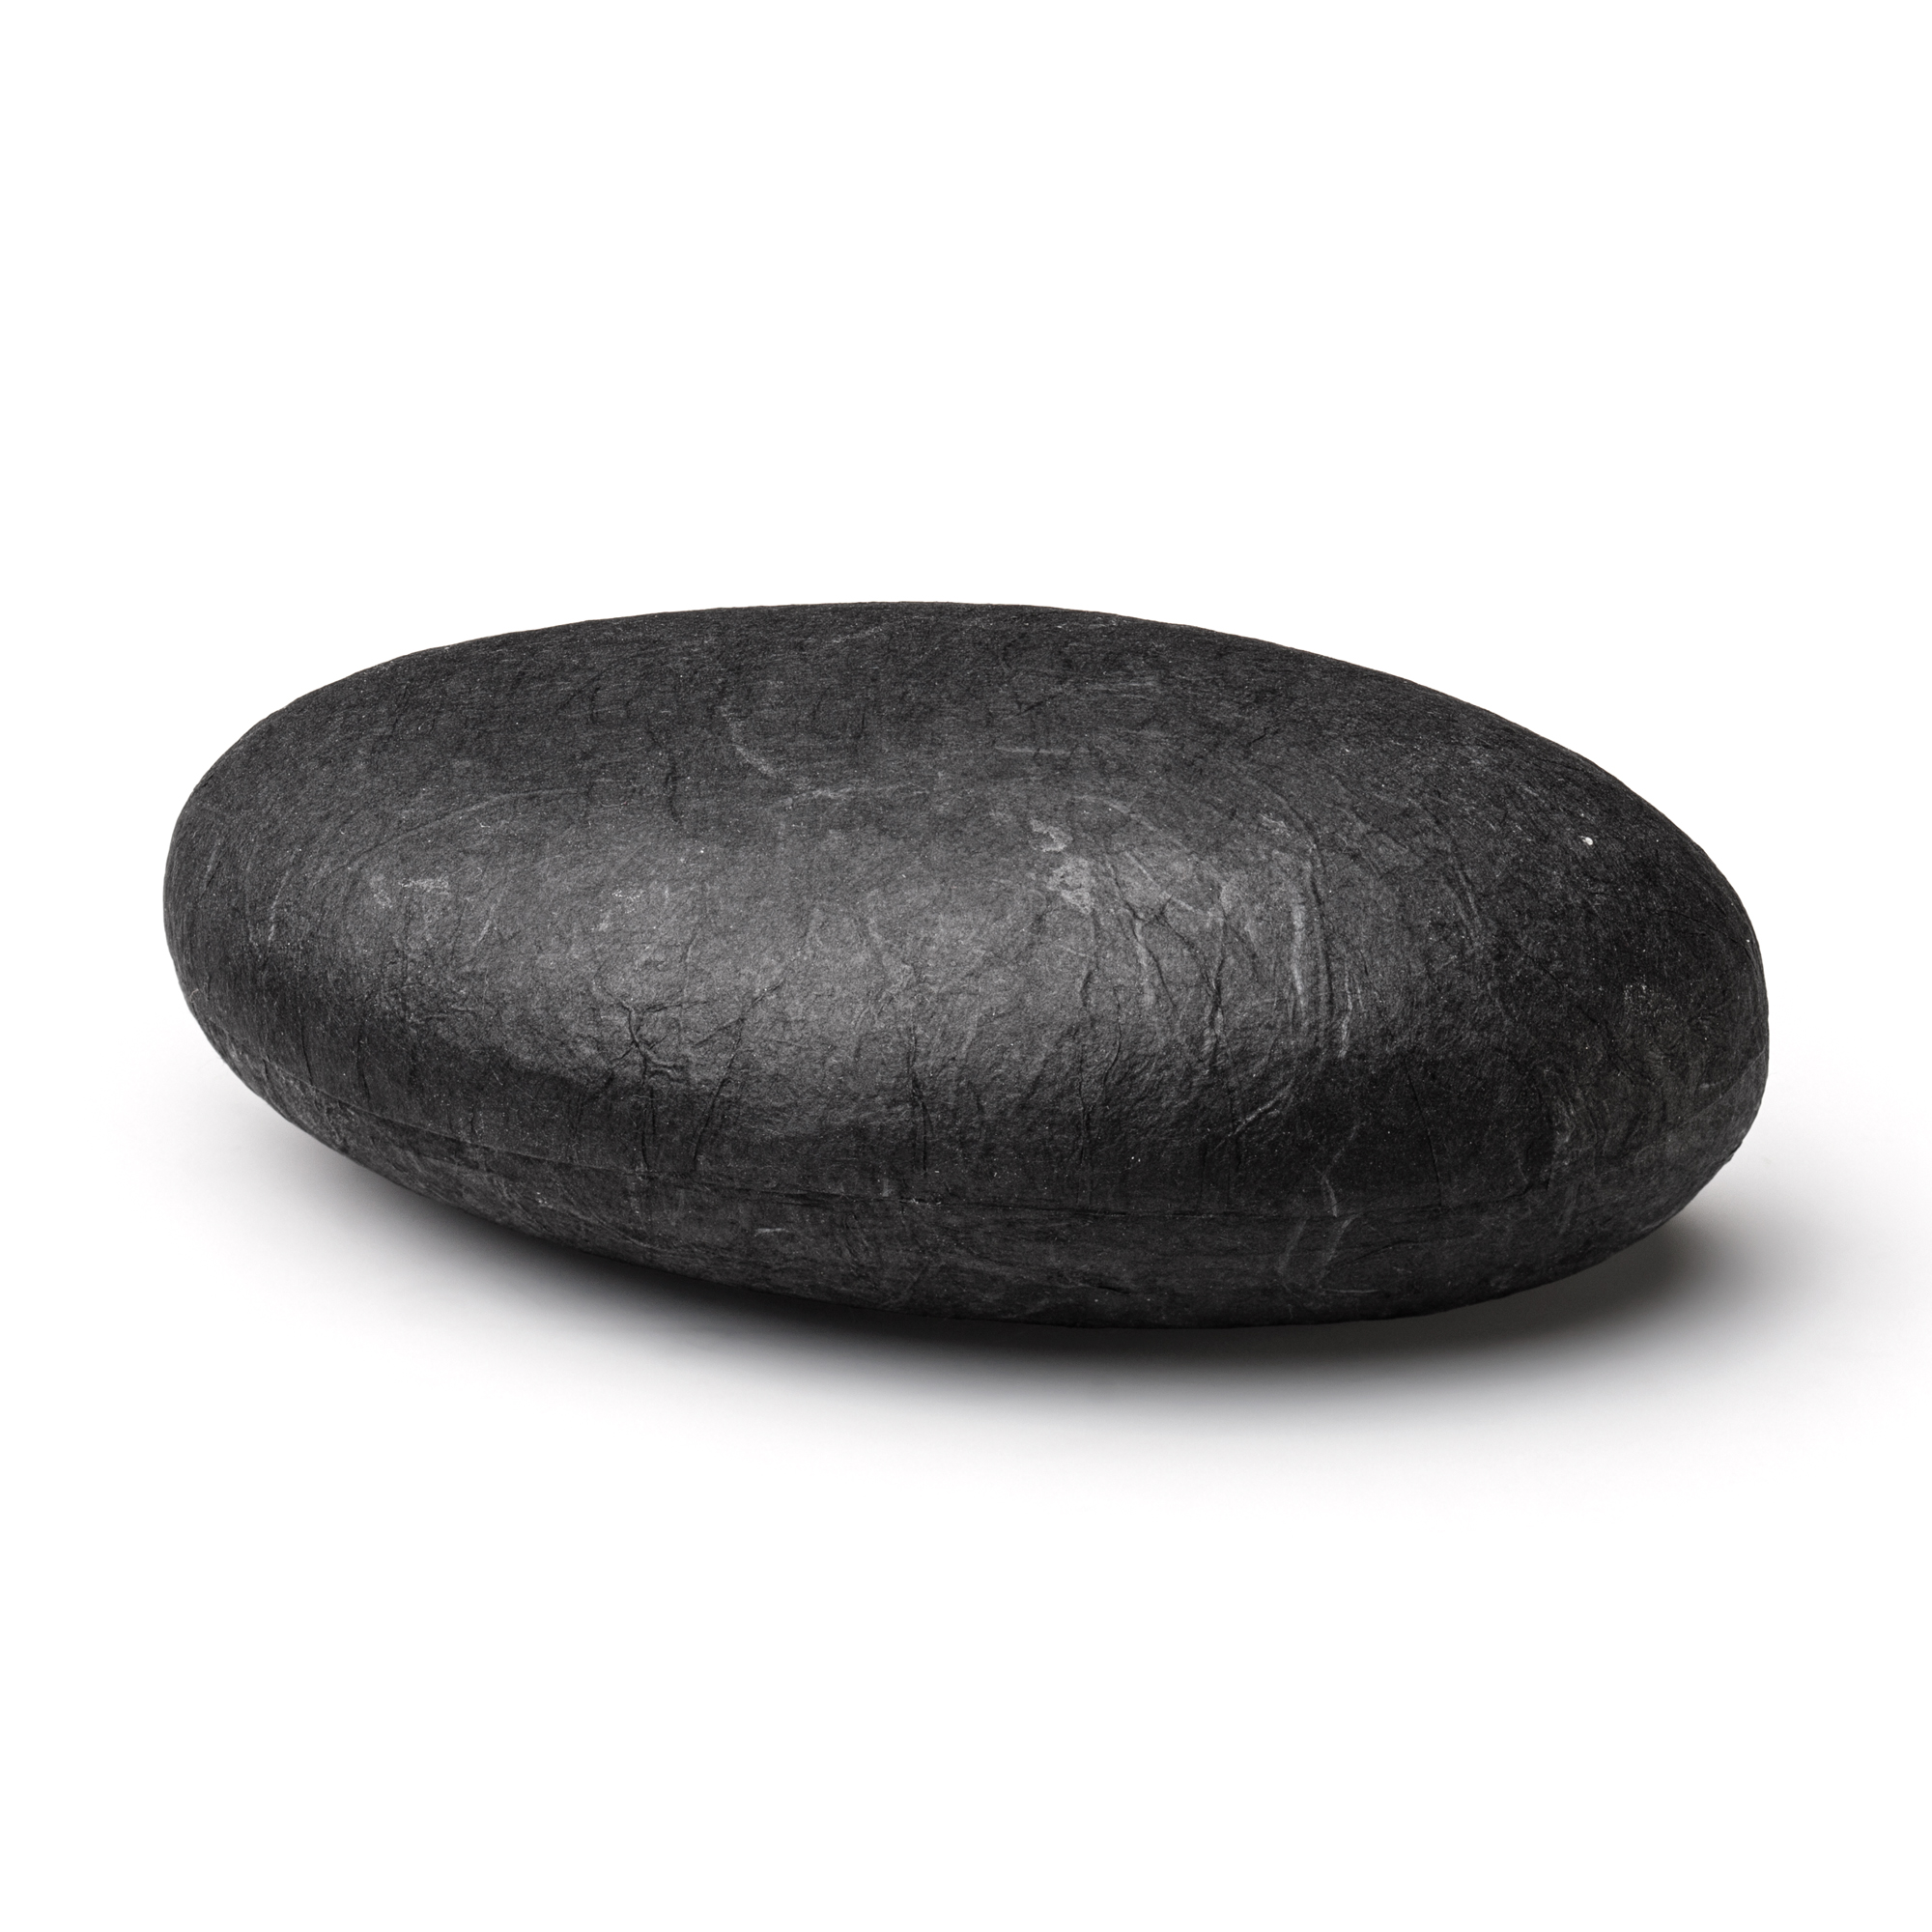 Stone maxi, 170 x 110 x 60 mm, black